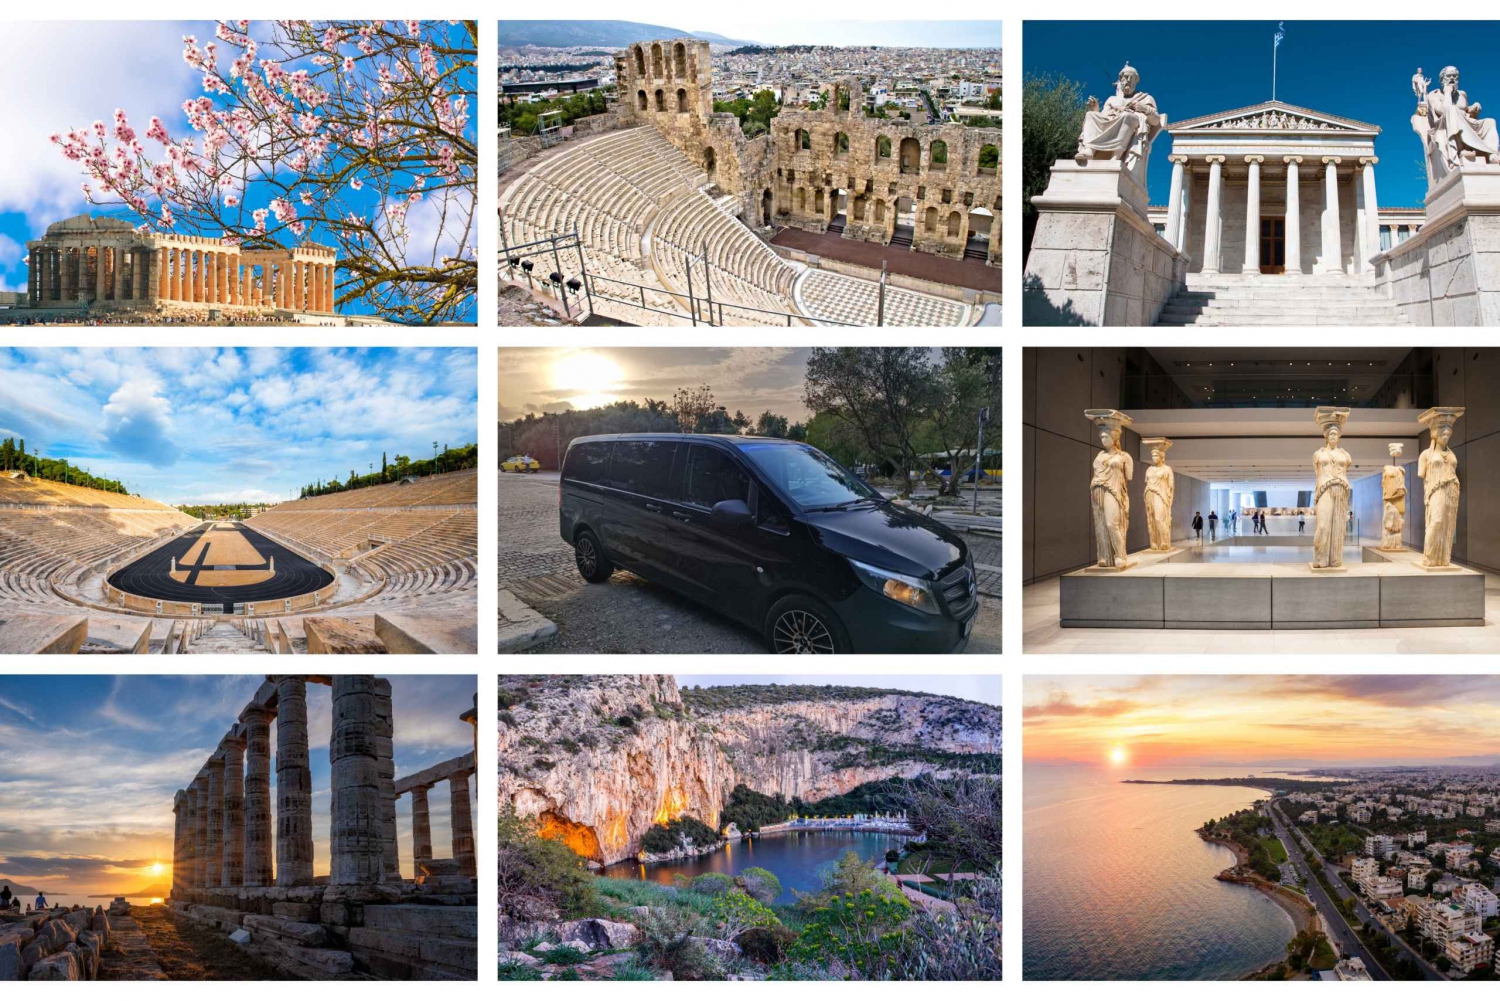 Atenas: excursão particular de um dia a Atenas, Sounio e Lago Vouliagmeni